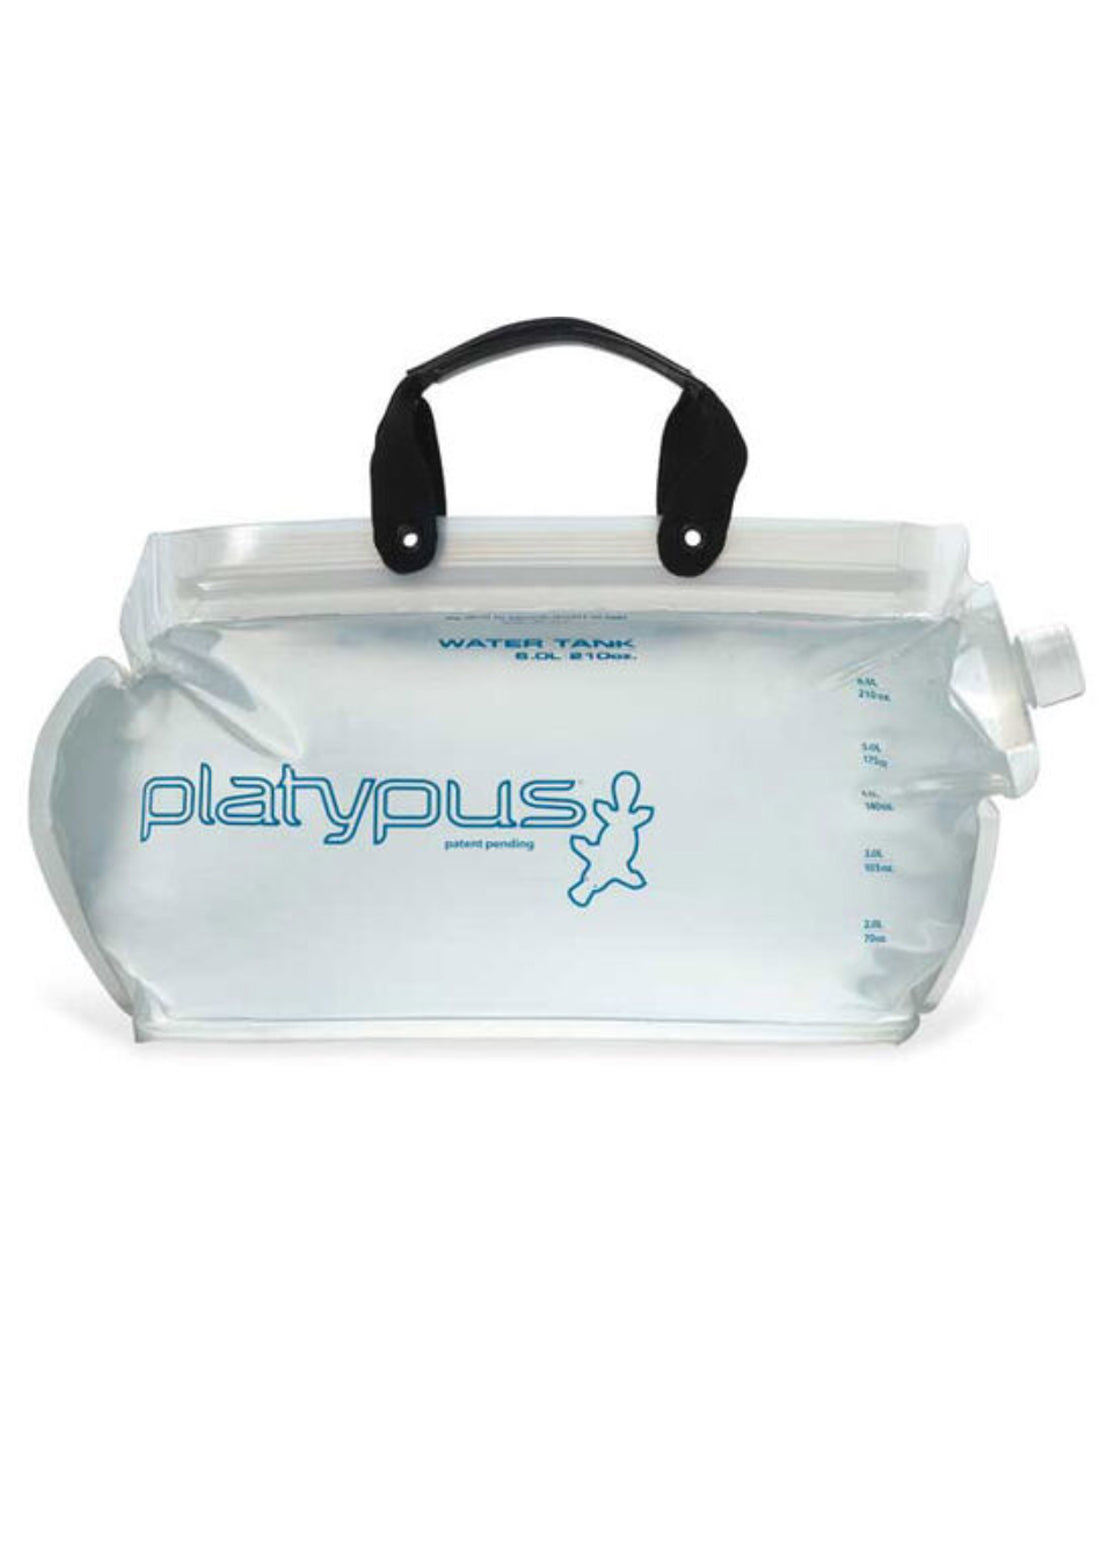 Platypus 4.0L Water Tank Clear